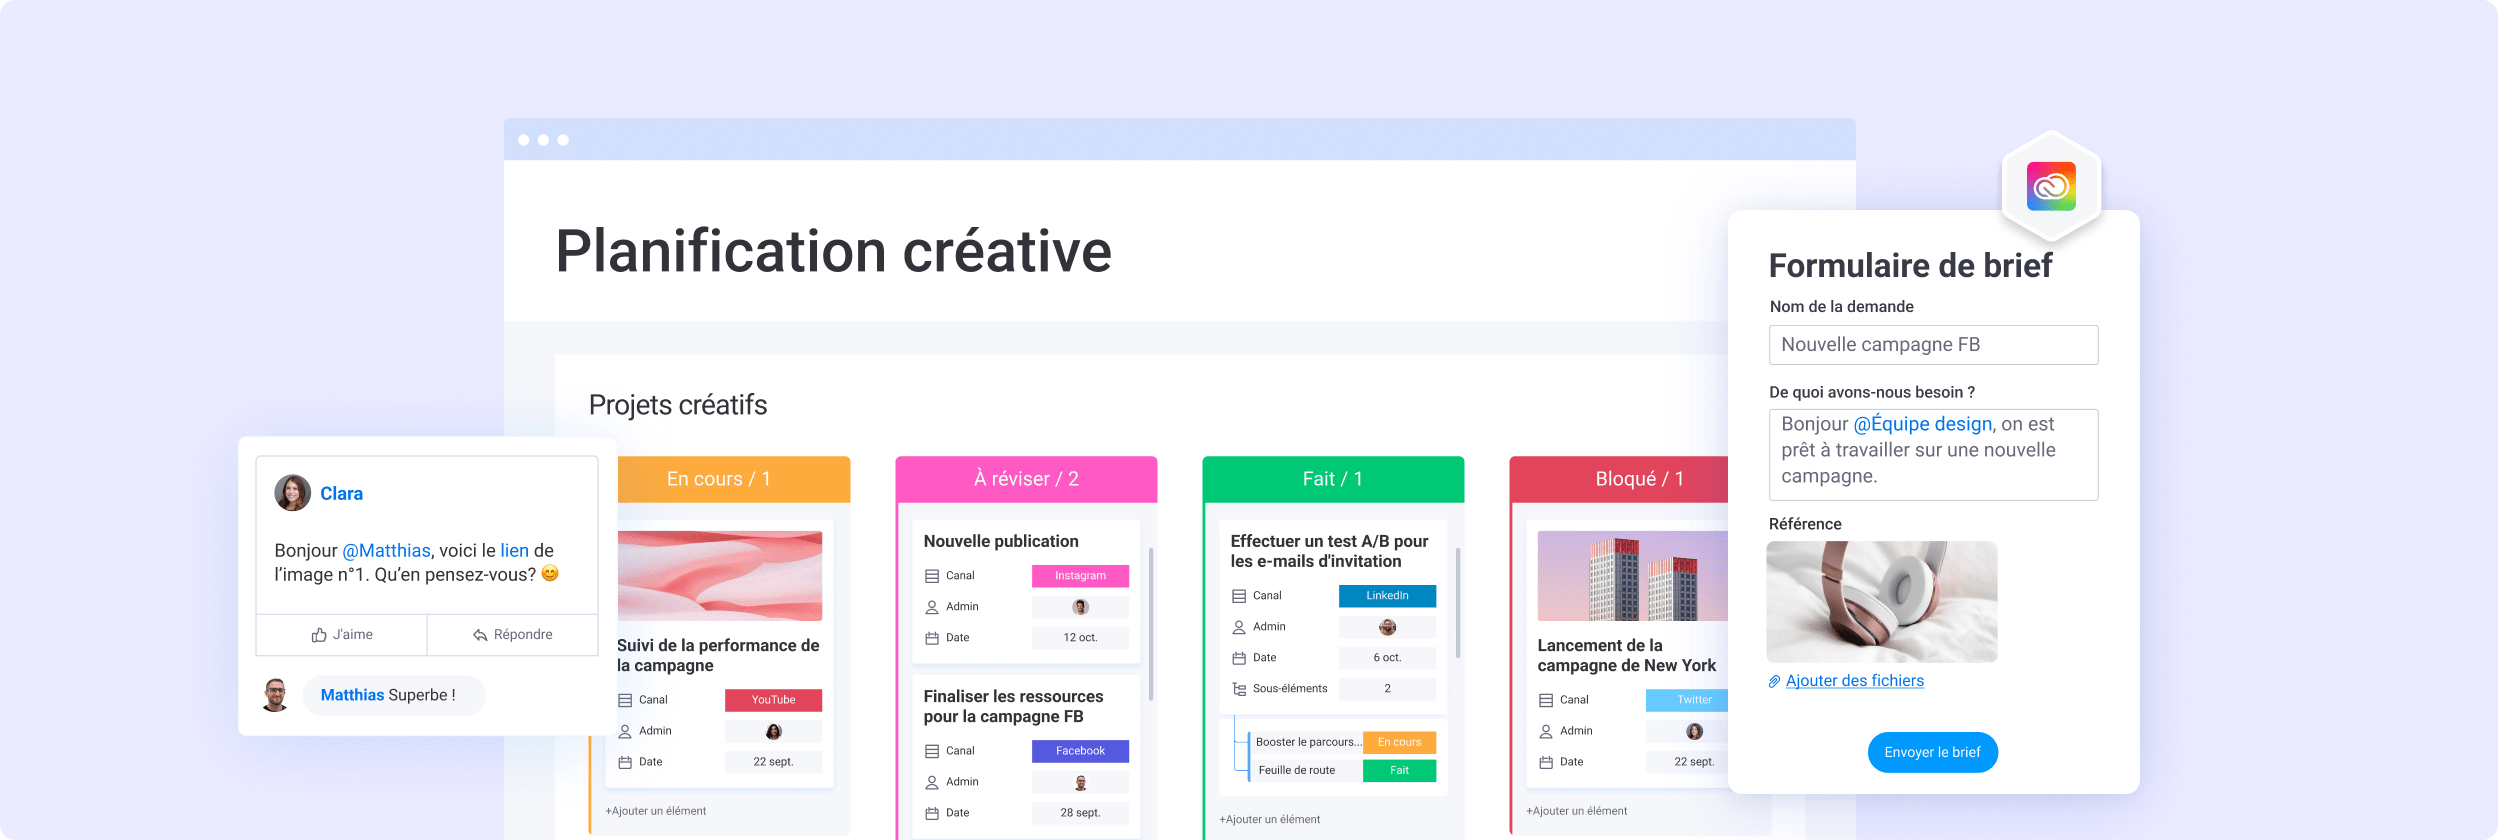 Kanban de projets créatifs, formulaire de demande de briefing créatif et mise à jour utilisateur avec réponse du collaborateur